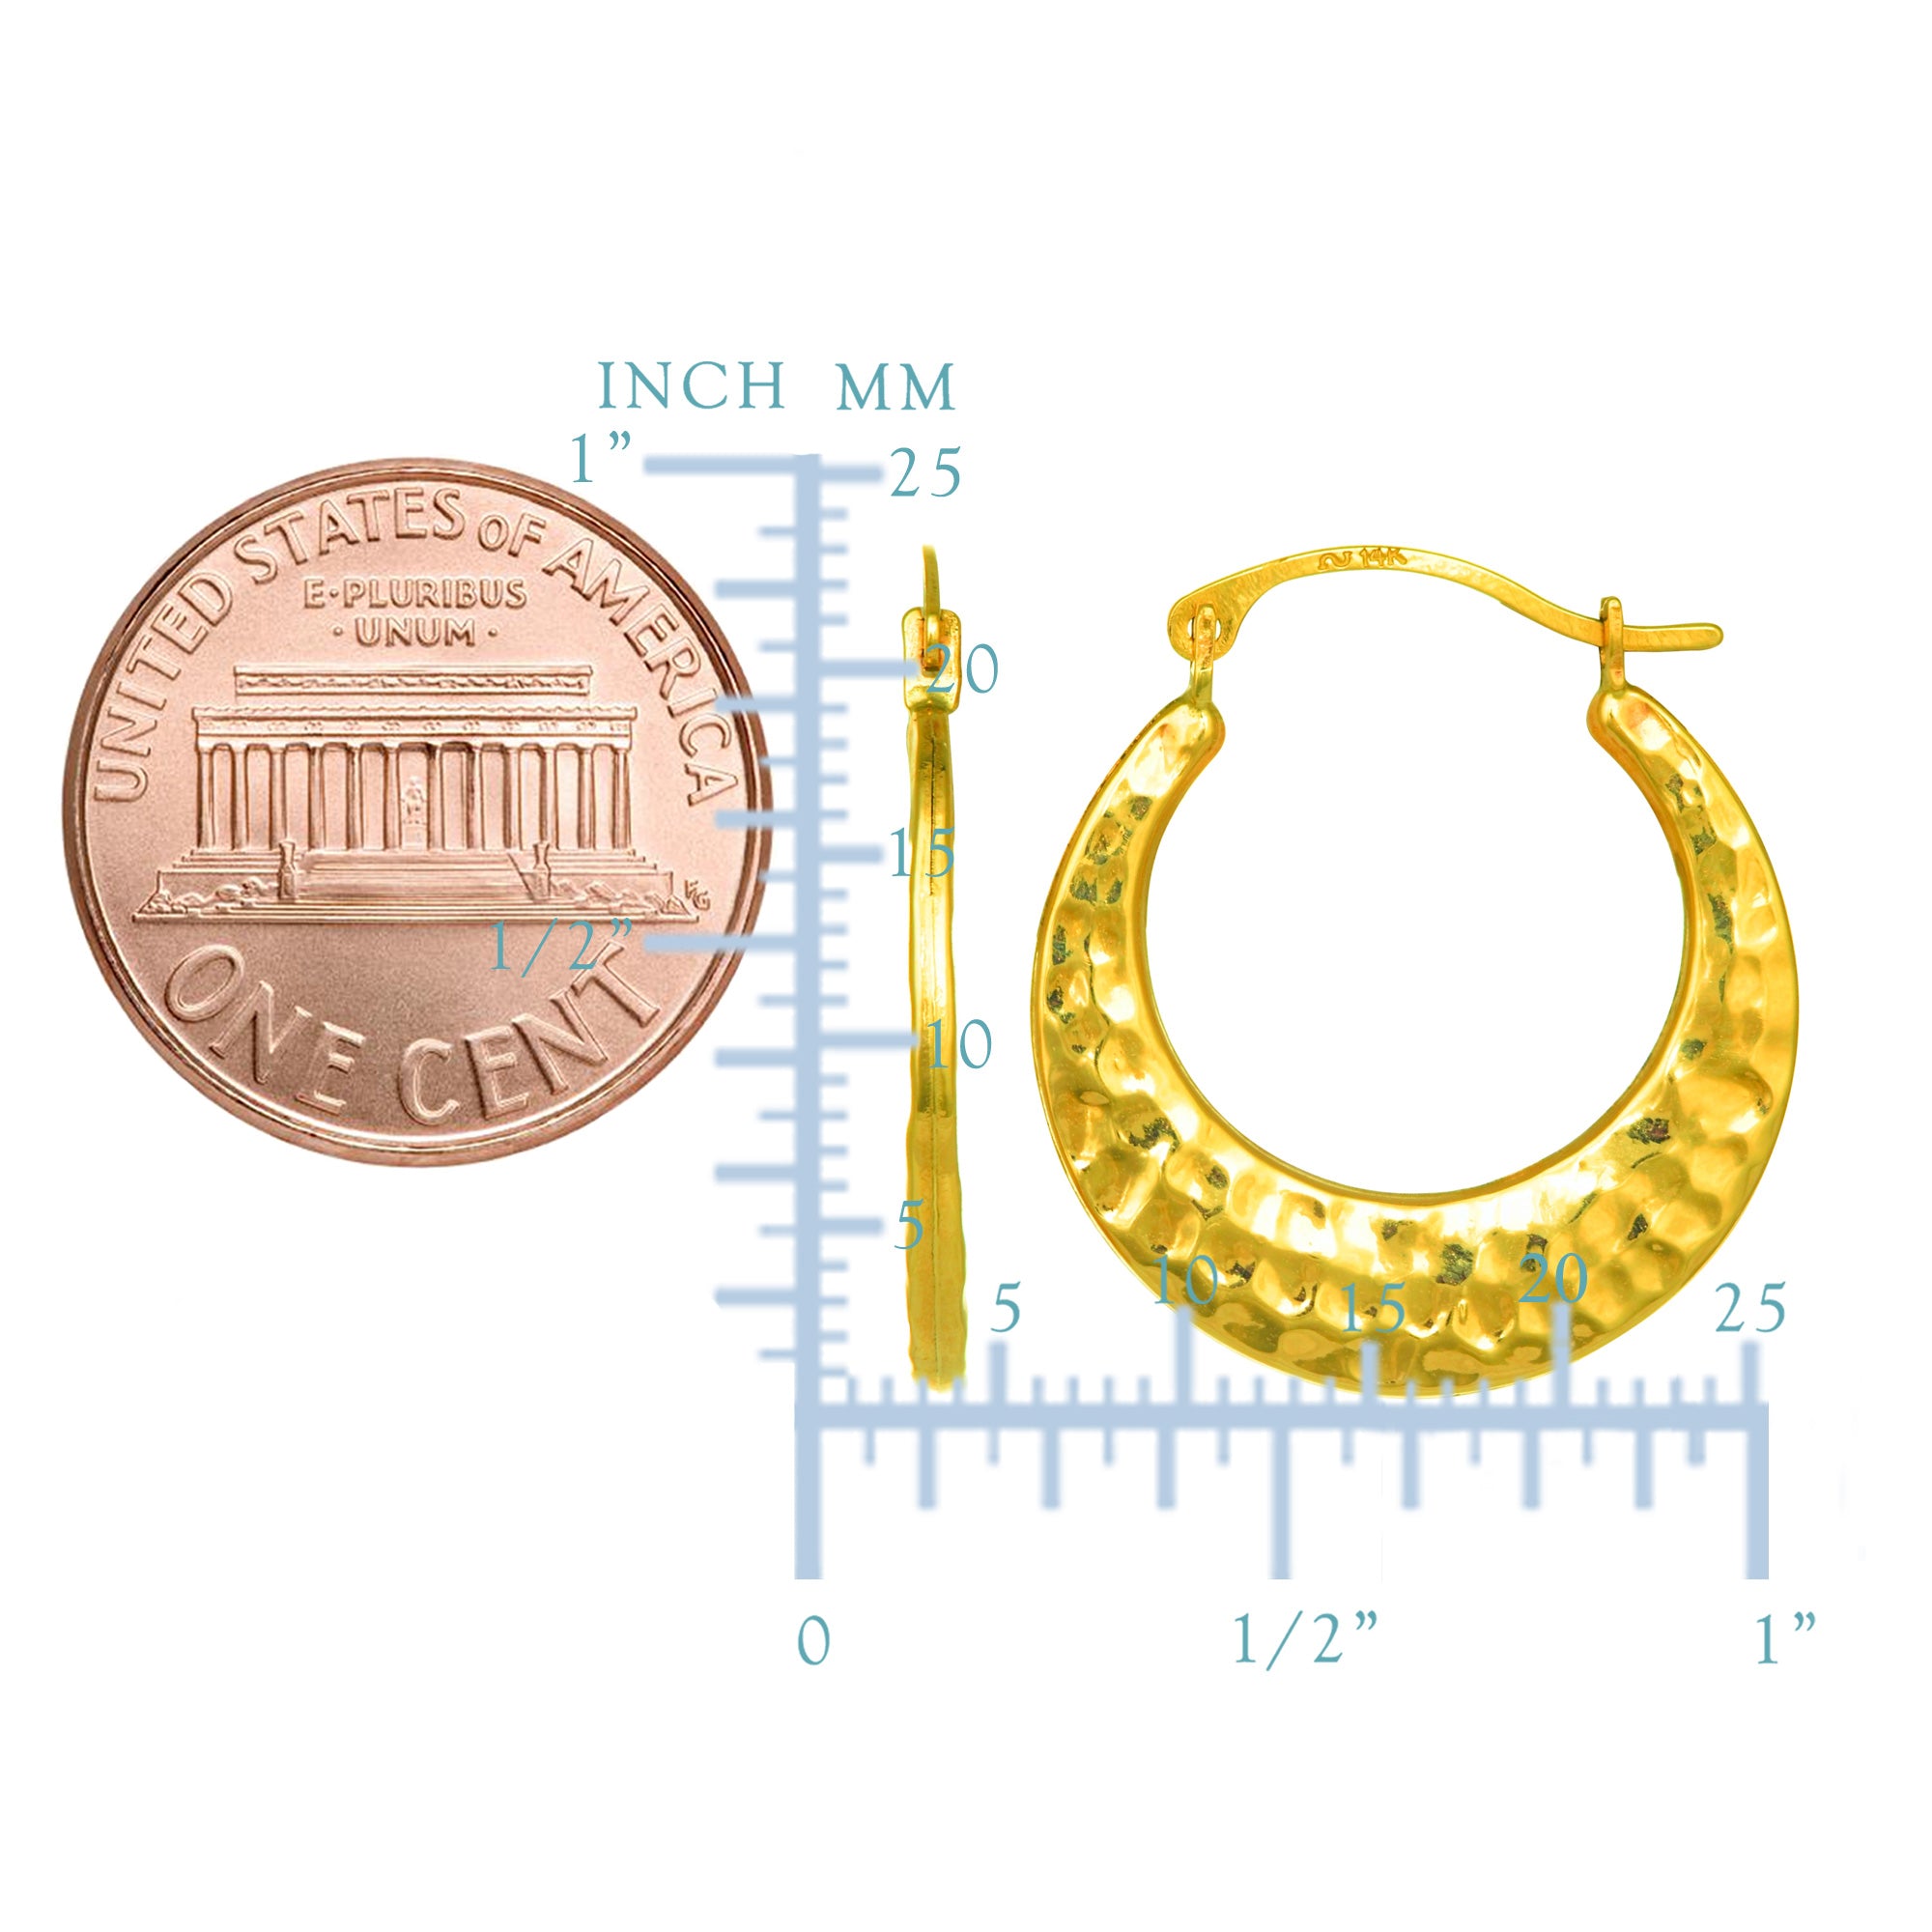 10 k gult guld hamrade runda ringörhängen, diameter 20 mm fina designersmycken för män och kvinnor